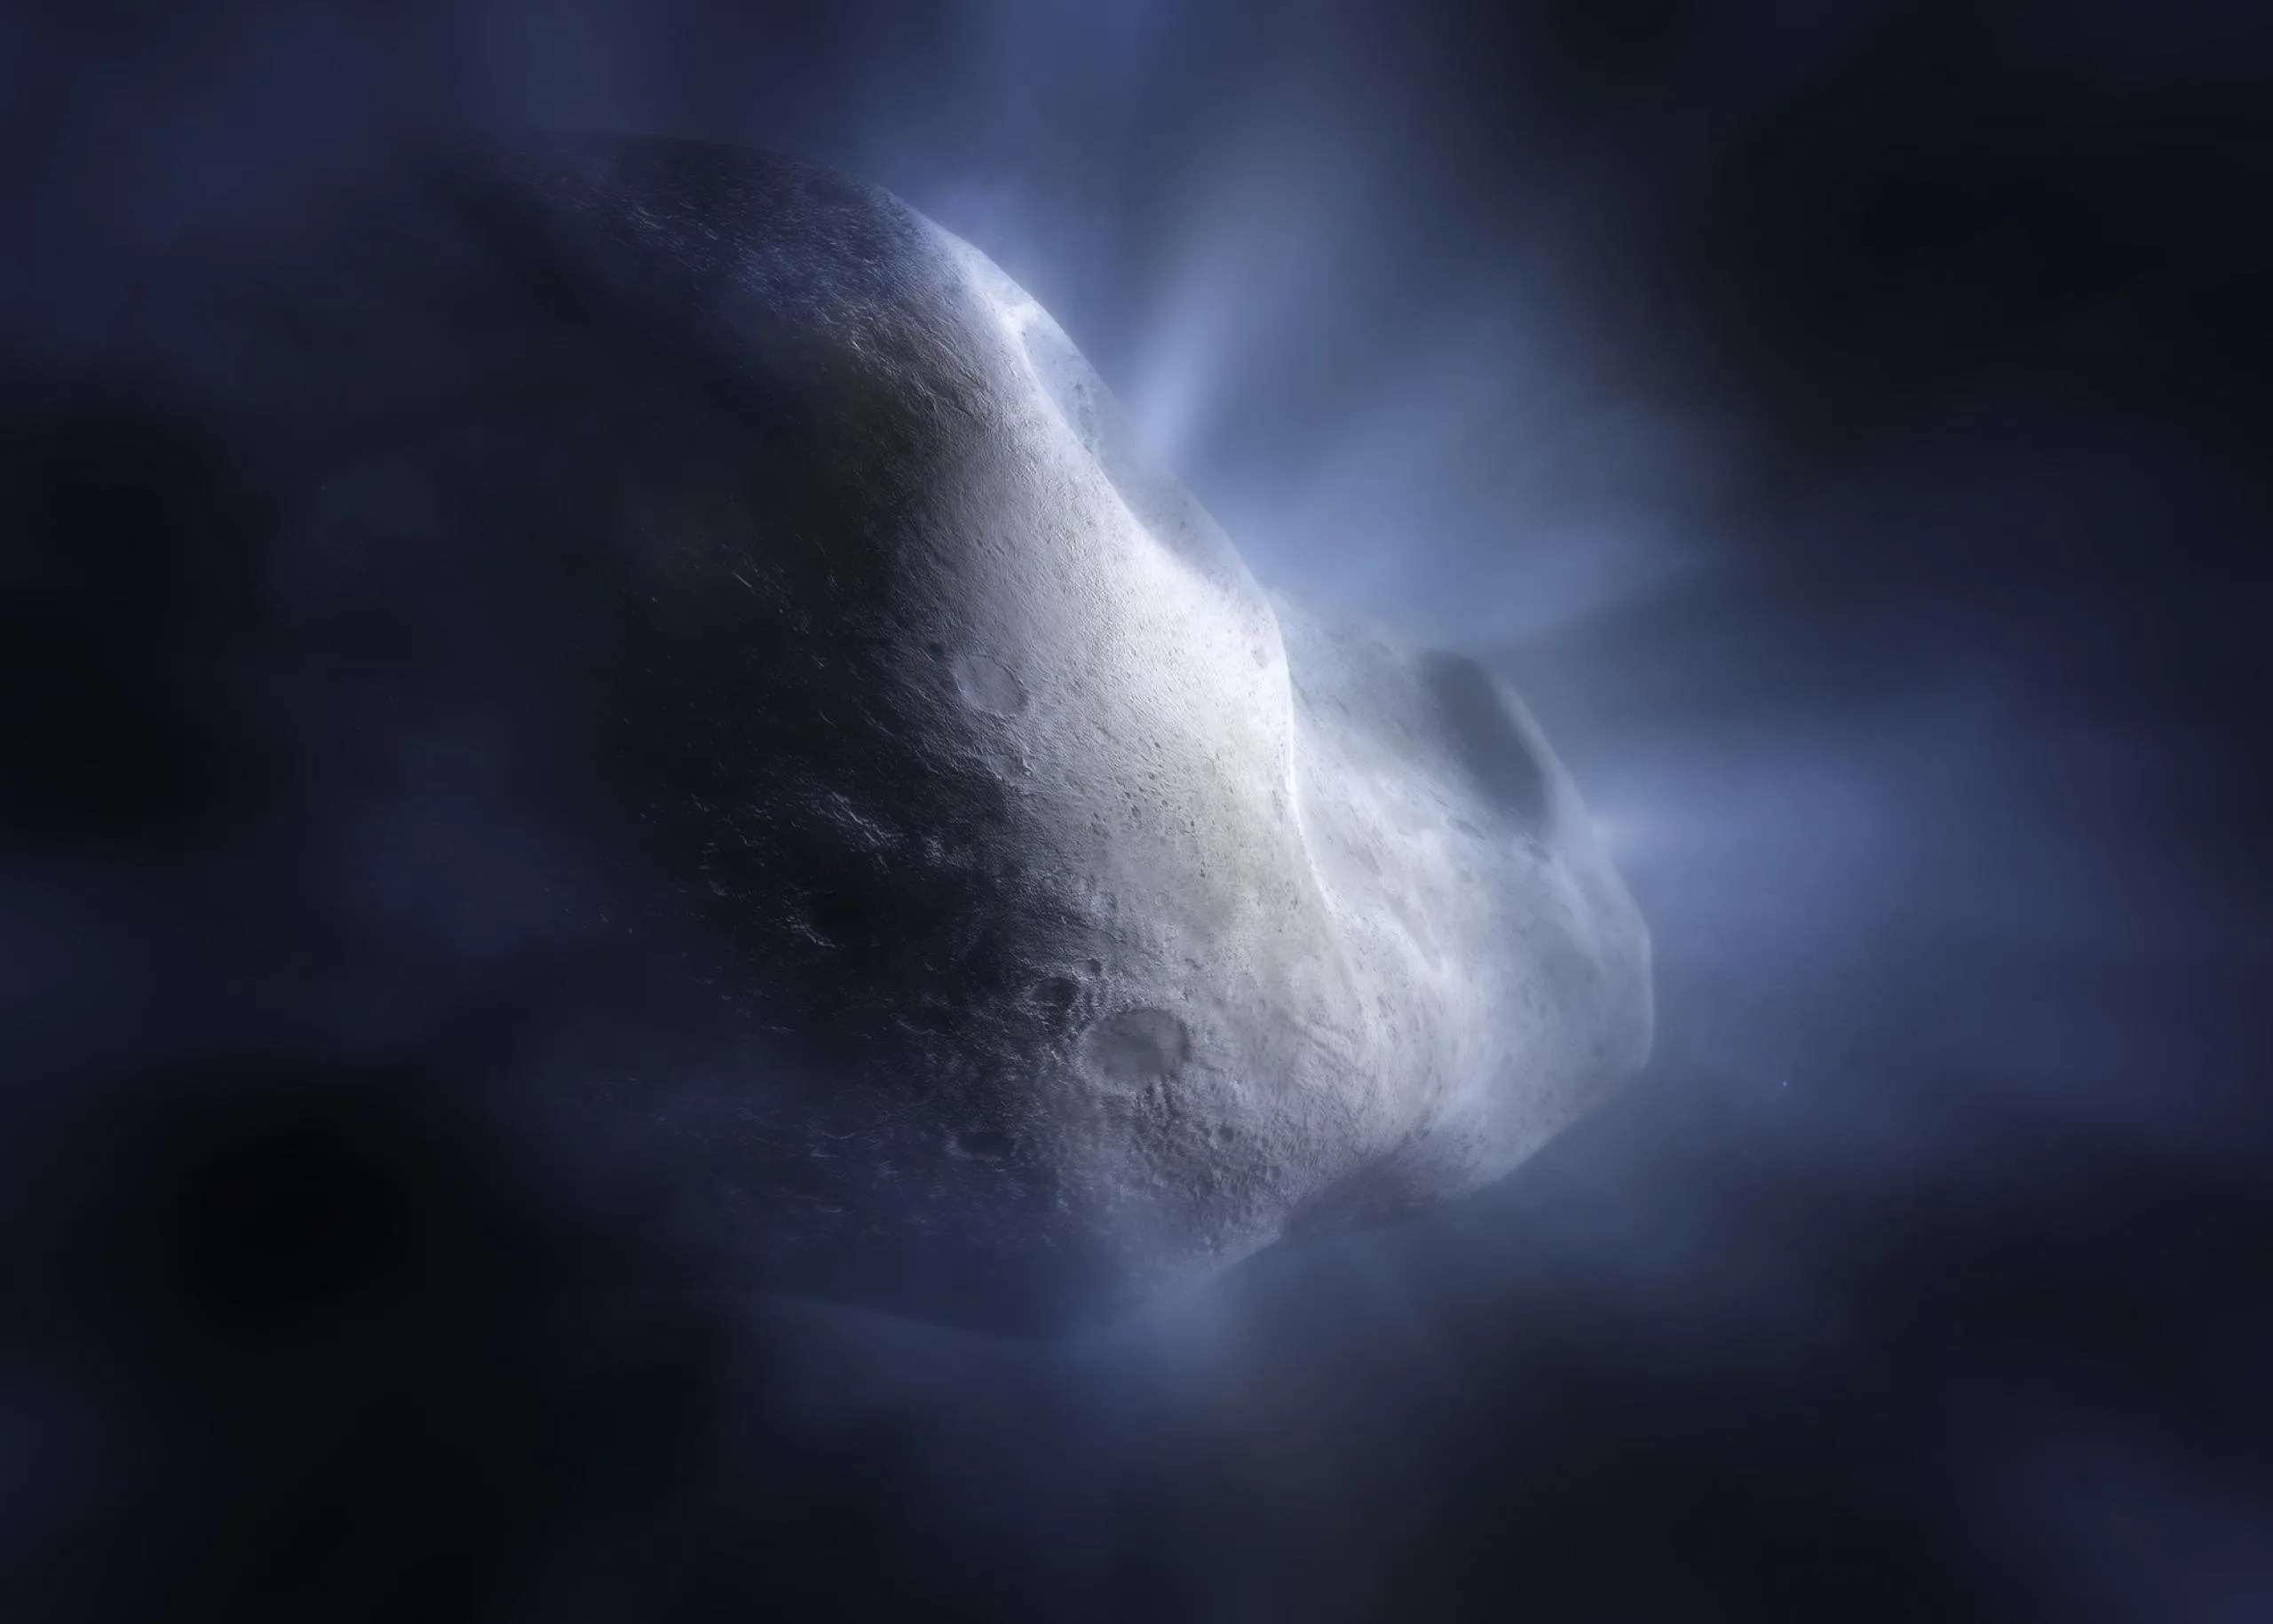 Ilustración: primer plano del cuerpo rocoso de un cometa con una superficie detallada y llena de cráteres. De la superficie rocosa emanan rayos resplandecientes como la luz del sol a través de las nubes, representando el hielo de agua que se vaporiza con el calor del Sol.